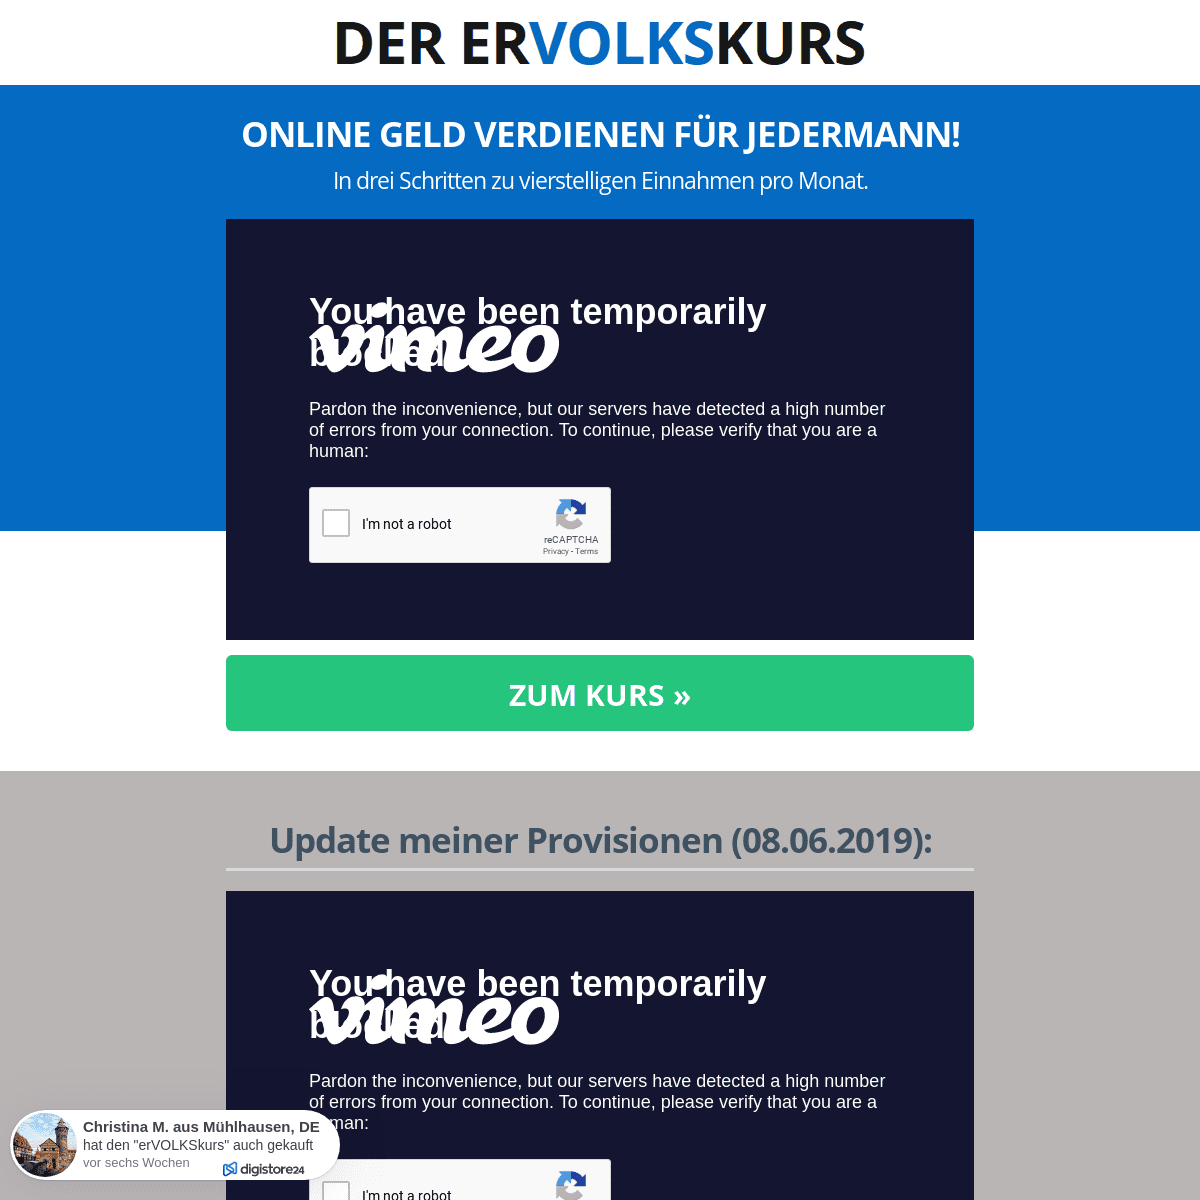 A complete backup of ervolkskurs.de